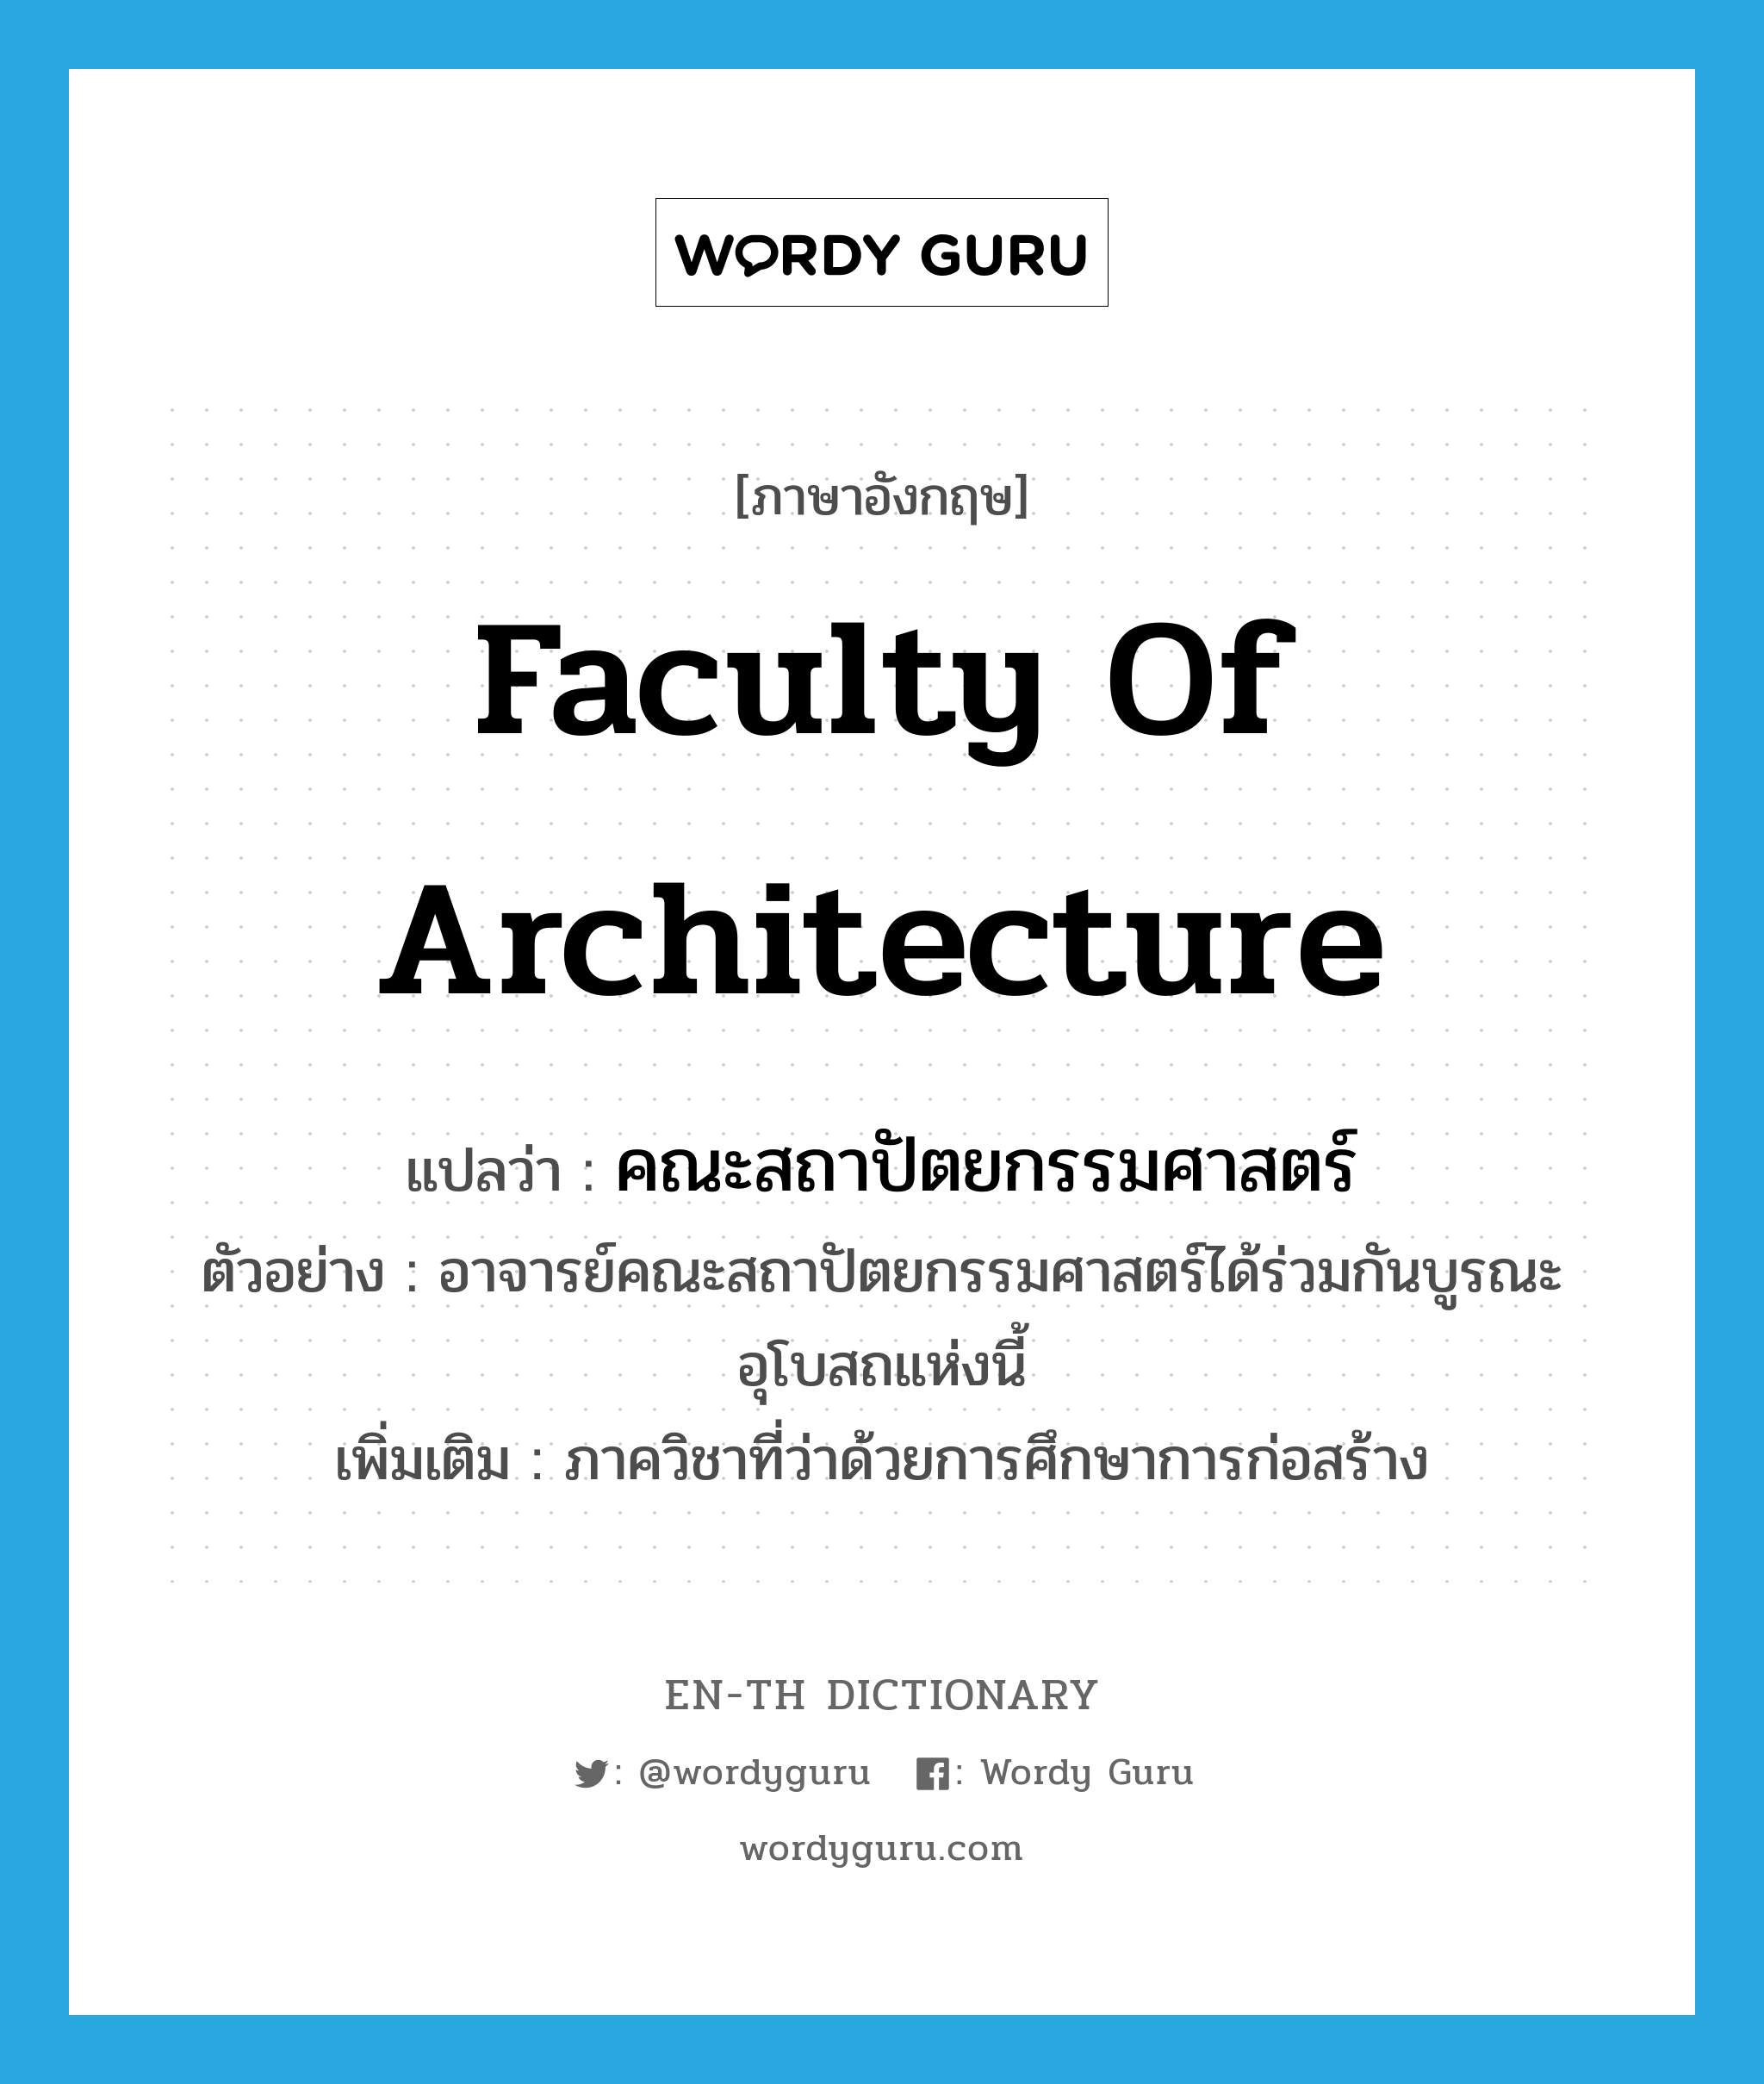 Faculty of Architecture แปลว่า?, คำศัพท์ภาษาอังกฤษ Faculty of Architecture แปลว่า คณะสถาปัตยกรรมศาสตร์ ประเภท N ตัวอย่าง อาจารย์คณะสถาปัตยกรรมศาสตร์ได้ร่วมกันบูรณะอุโบสถแห่งนี้ เพิ่มเติม ภาควิชาที่ว่าด้วยการศึกษาการก่อสร้าง หมวด N